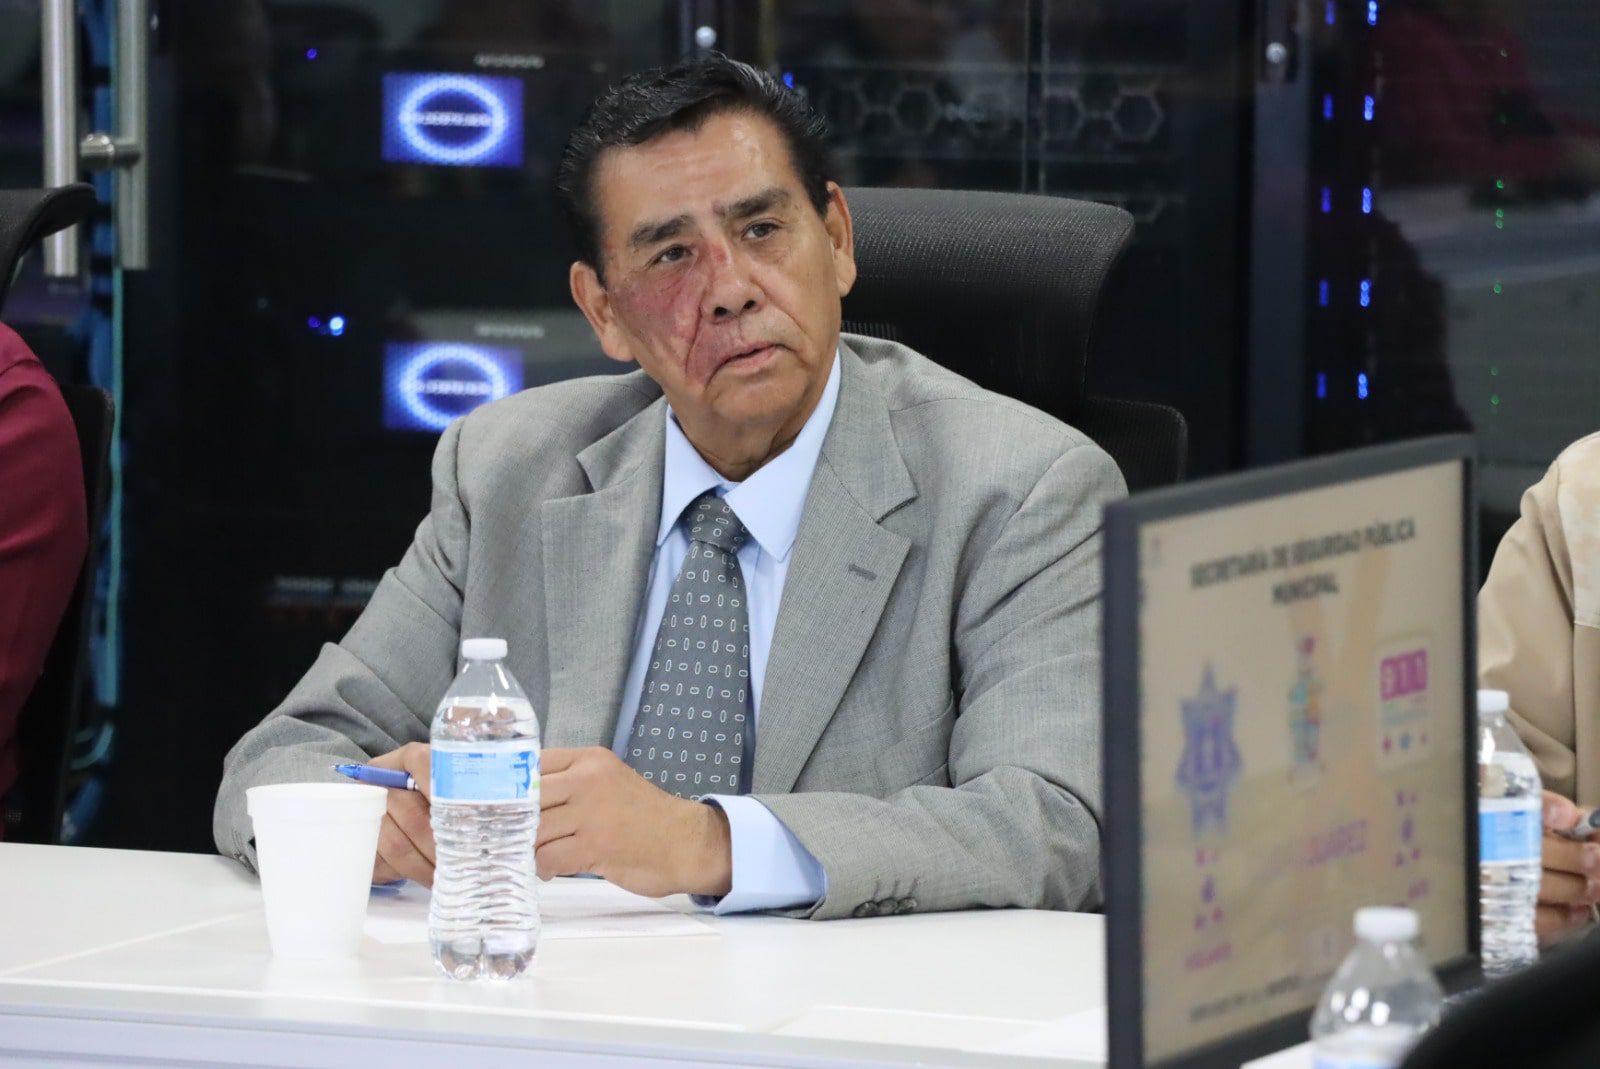 Personas en movilidad conocen la generosidad de Juárez: Martín Chaparro